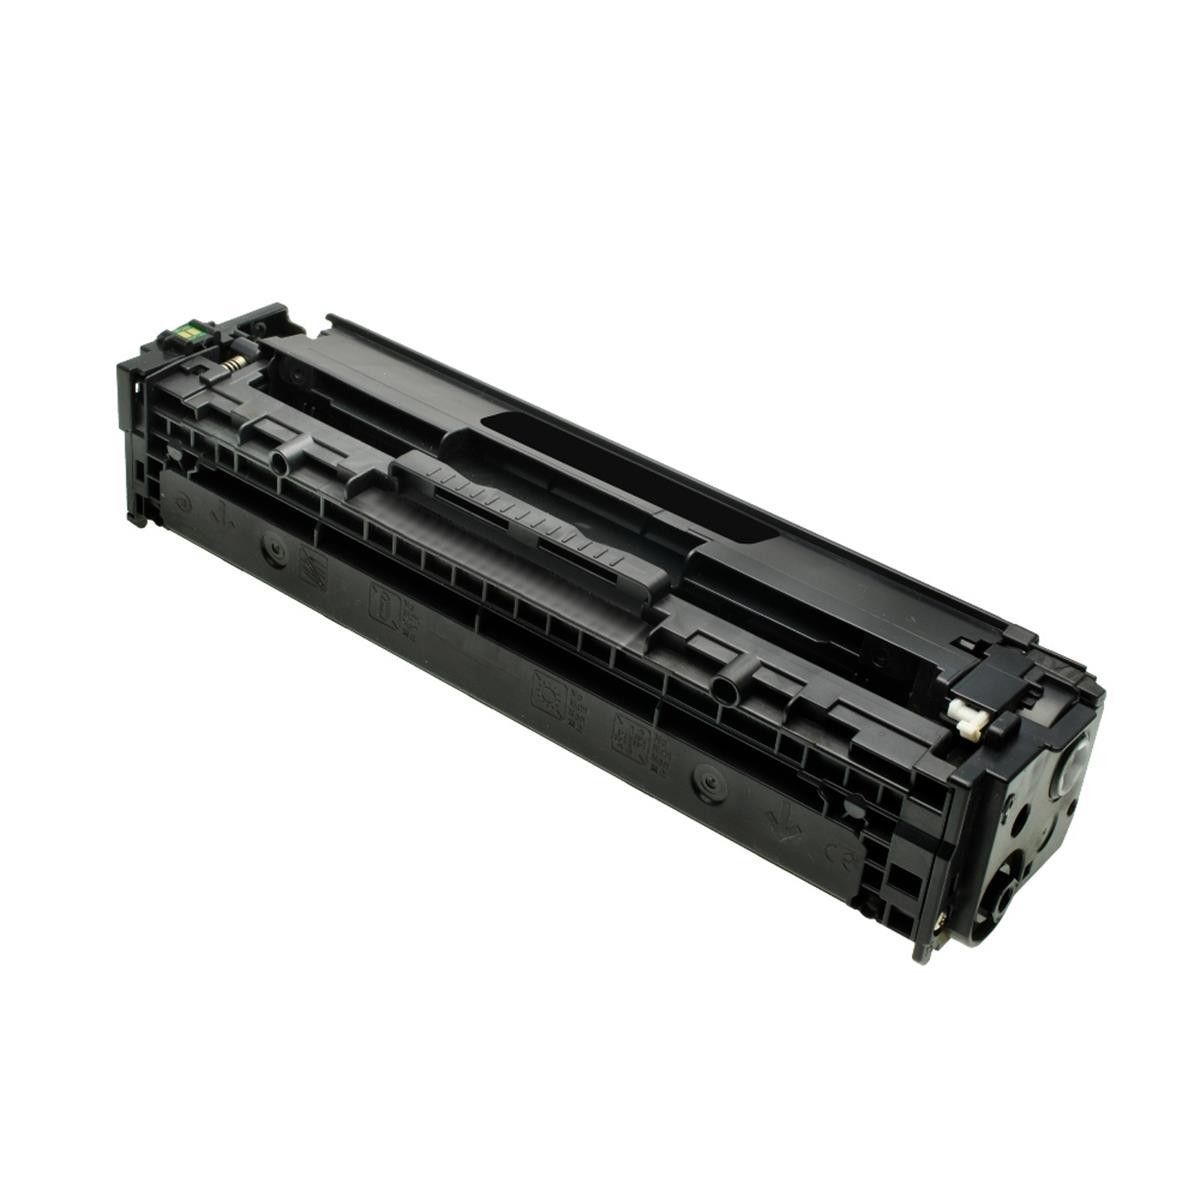 Toner HP CF410A Black 2.3K M452 M477 - Compativel Premium